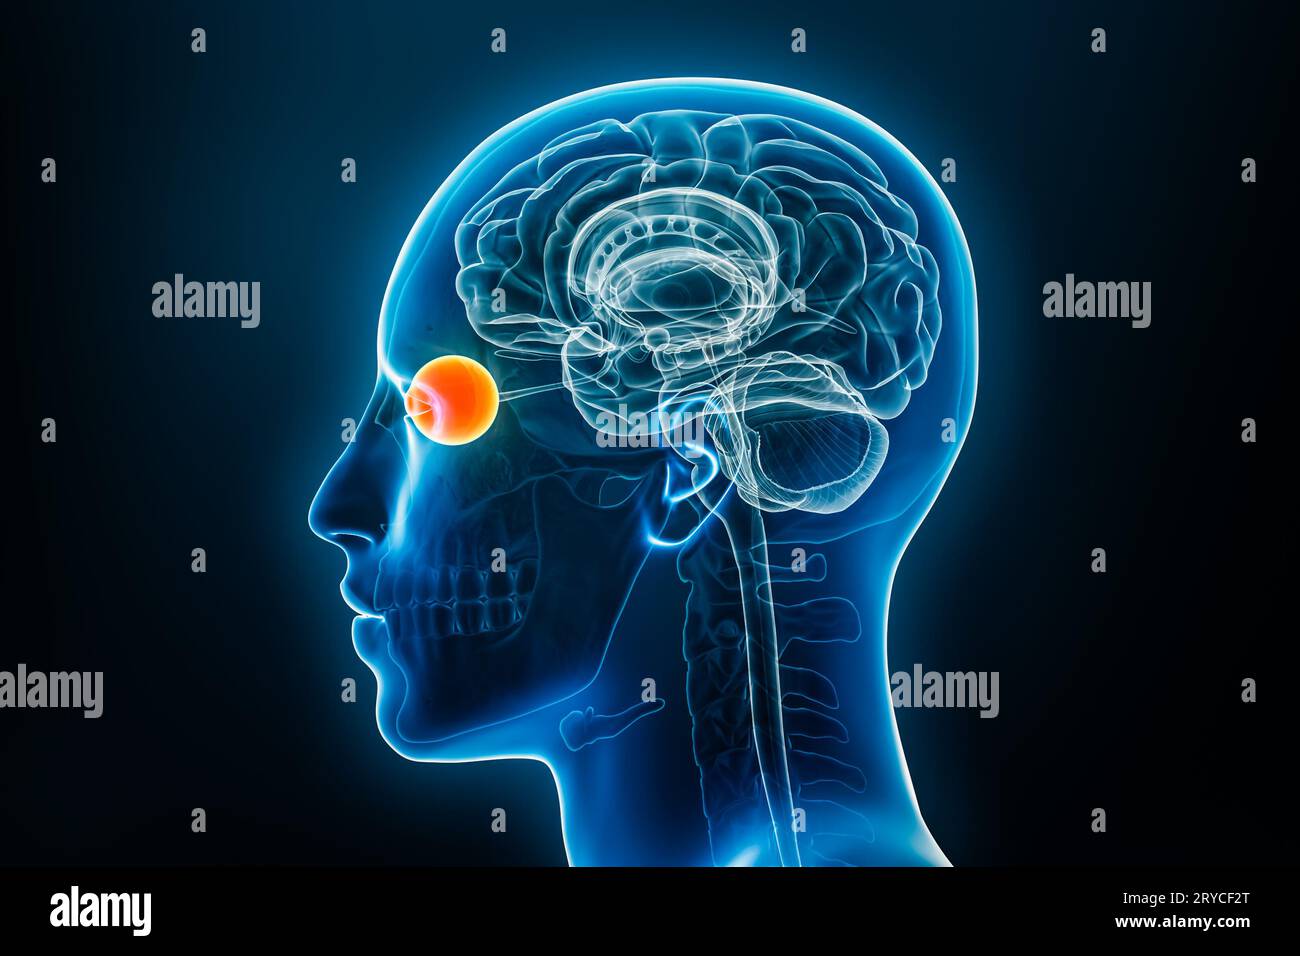 Vue de profil ou latérale de radiographie de l'œil illustration de rendu 3D avec contours du corps masculin. Anatomie humaine, médecine, biologie, science, neurosciences, neu Banque D'Images